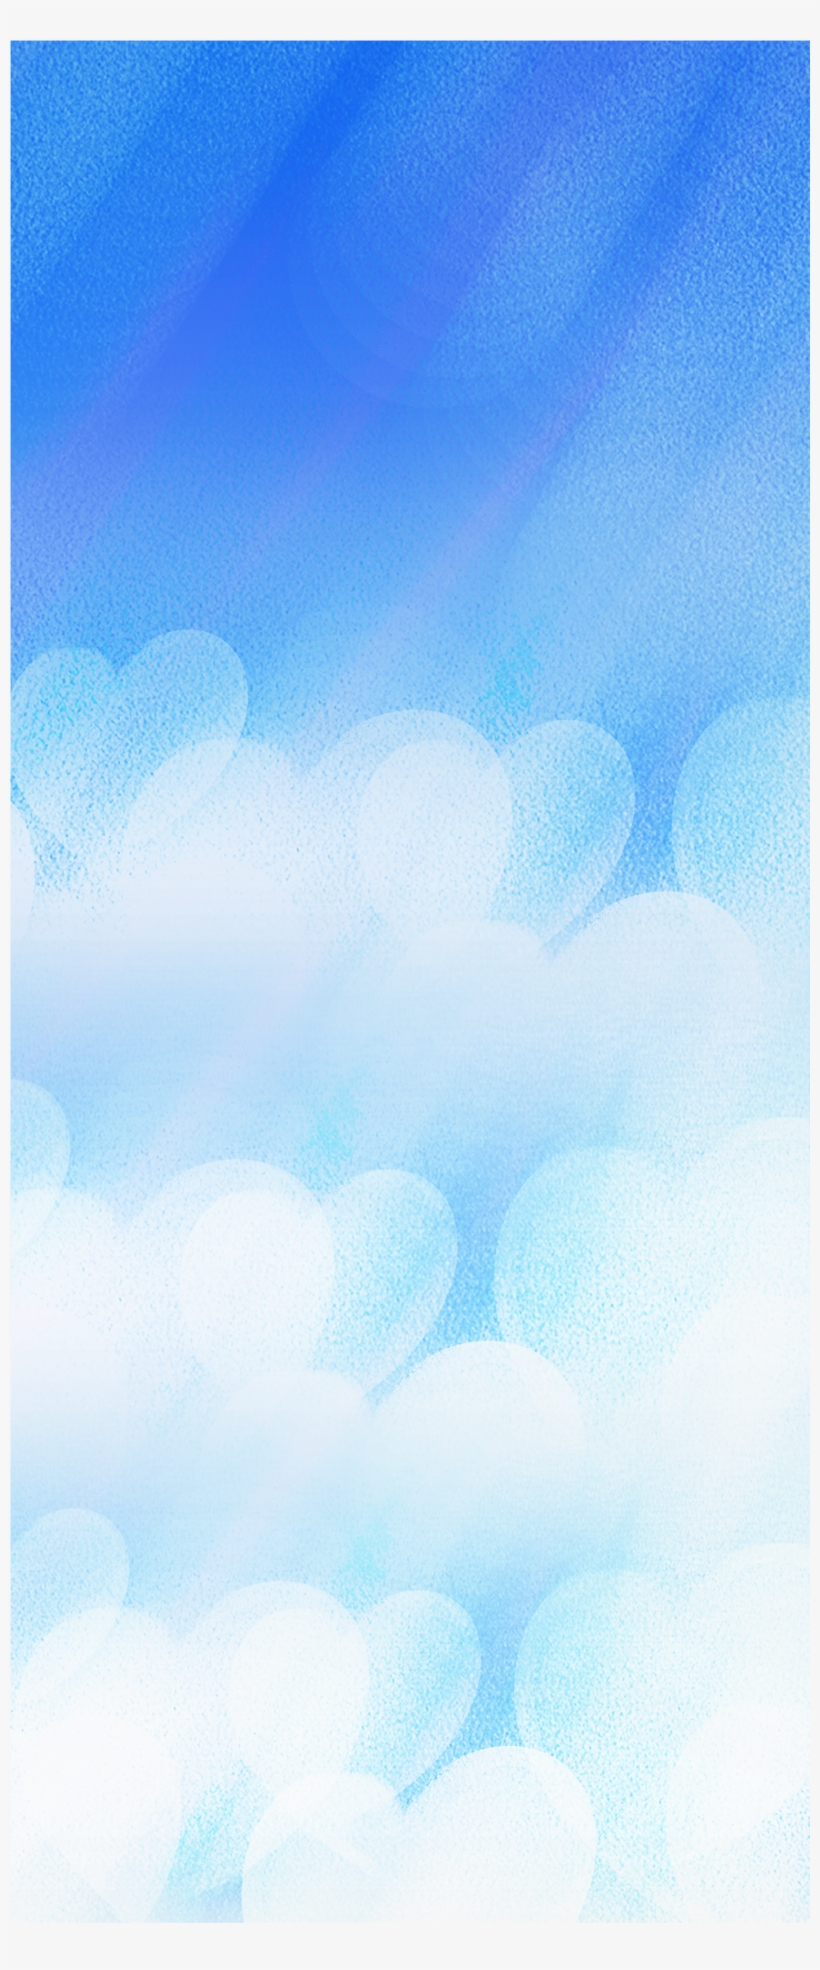 Sky Blue Background - Illustration, transparent png #7925099